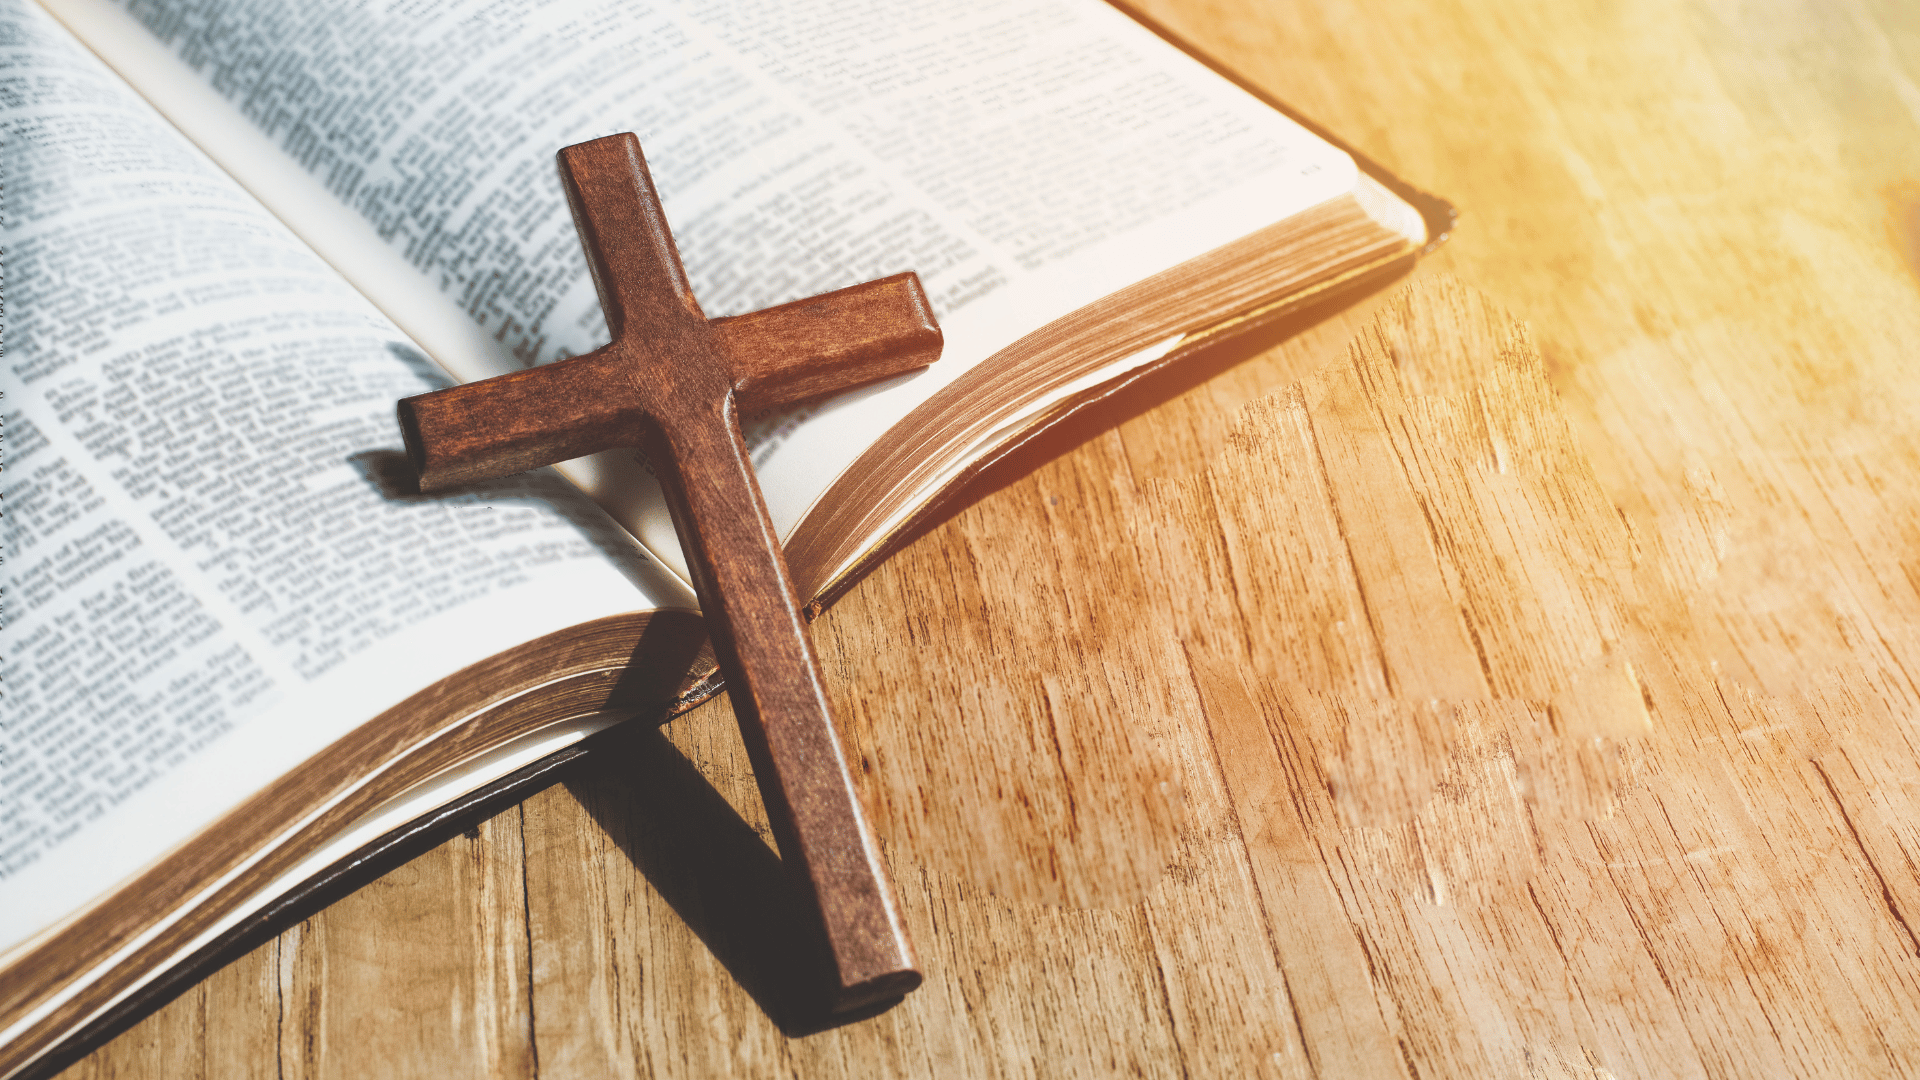 Bíblia aberta em uma mesa de madeira com uma cruz sobre as páginas.